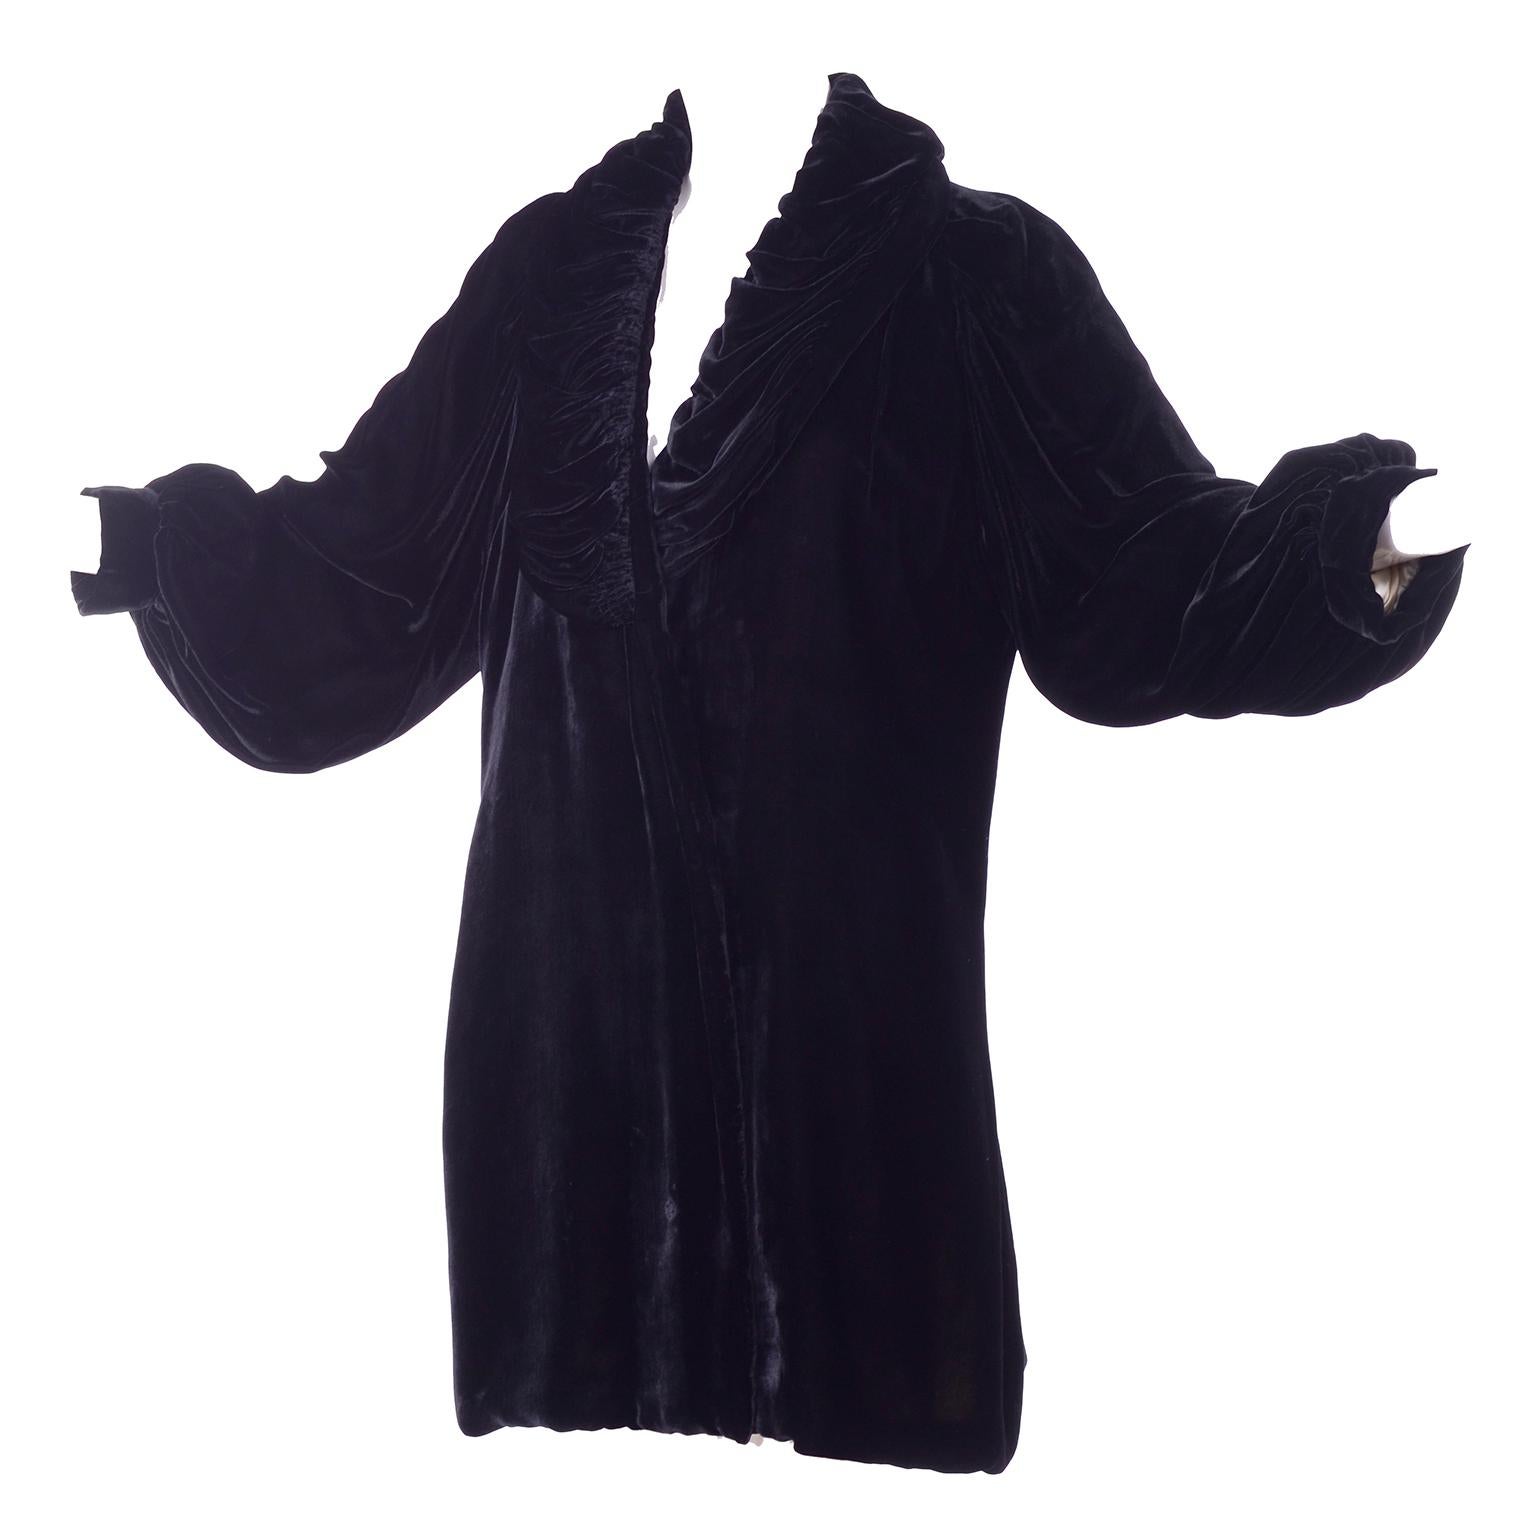 Magnifique manteau de soirée Edouardien vintage en velours noir avec un col bouffant et des manches bouffantes. Le manteau est magnifiquement doublé en satin de soie rose pâle. Ce manteau a une attache à l'intérieur qui ferme un côté mais pas